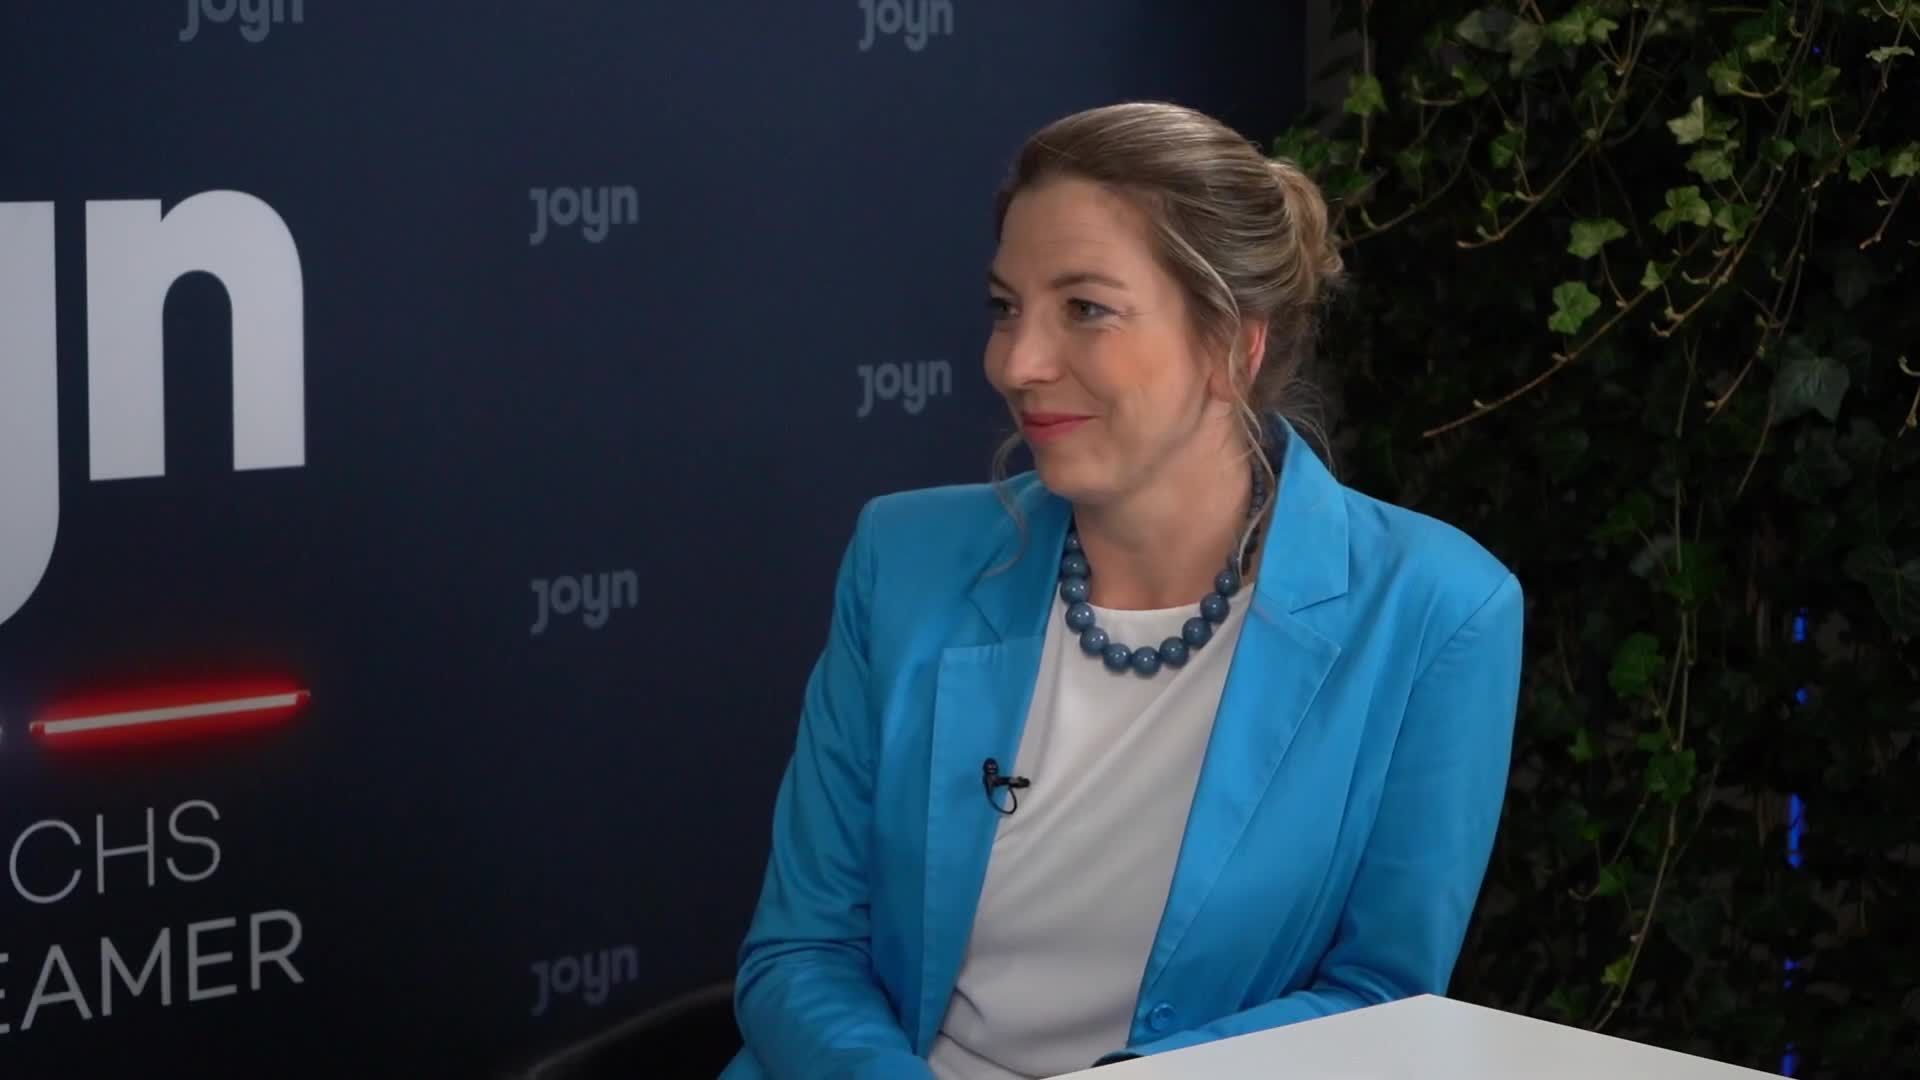 JOYN-Videocast mit Margaretha Jurik